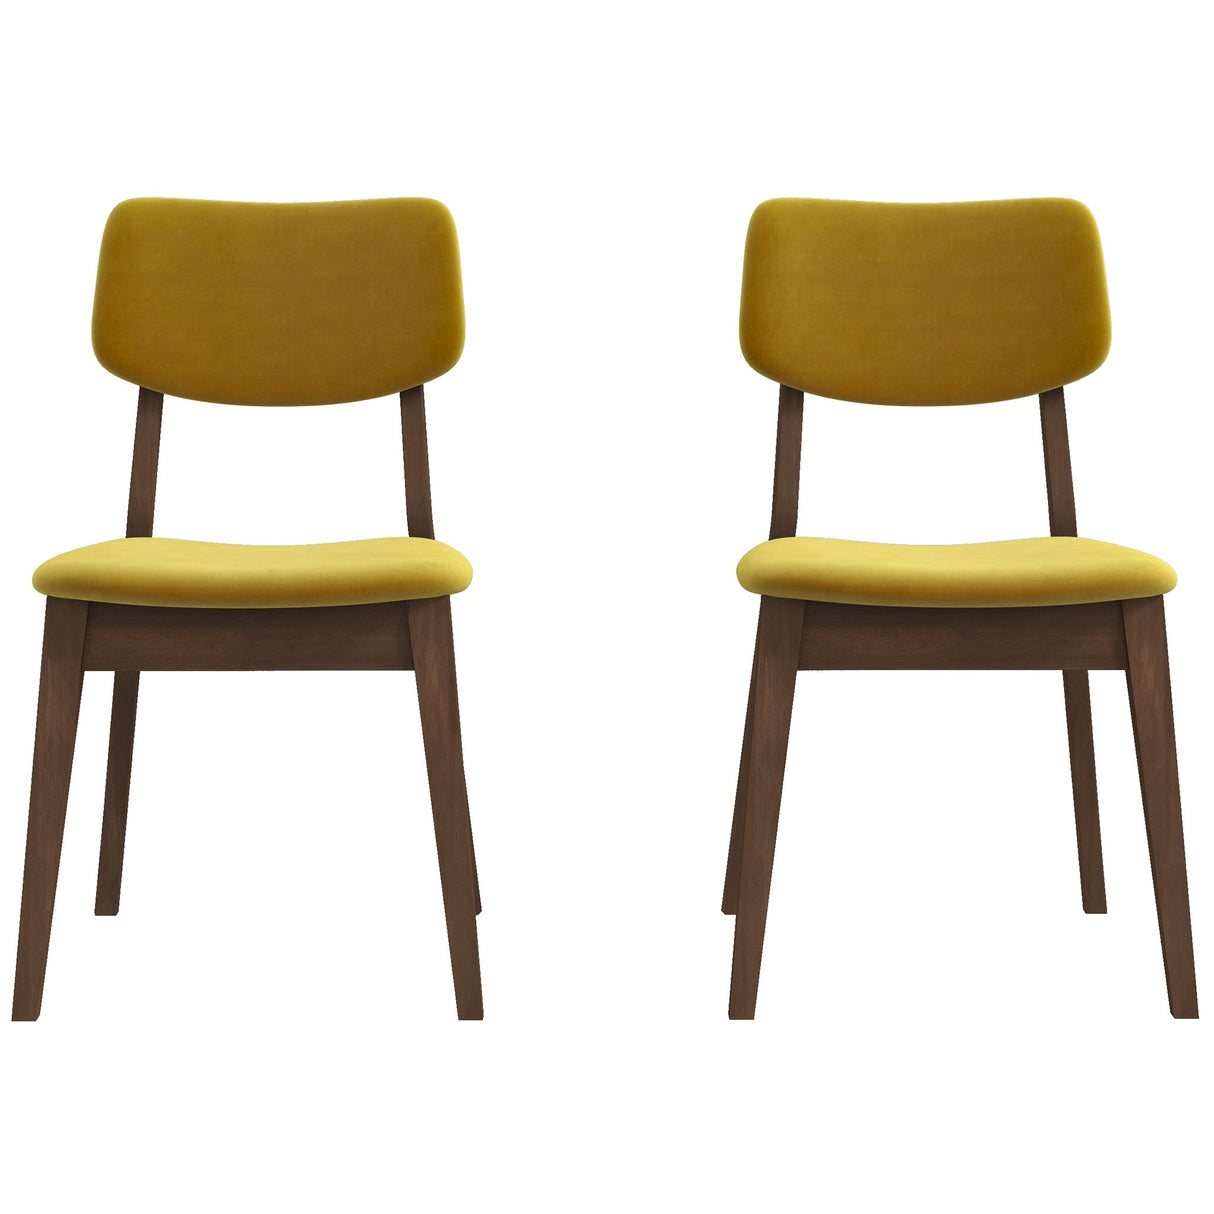 Mid-Century Modern Velvet Solid Back Side Chair (Set of 2) Teal Blue Velvet - AFC01831 - Luna Furniture